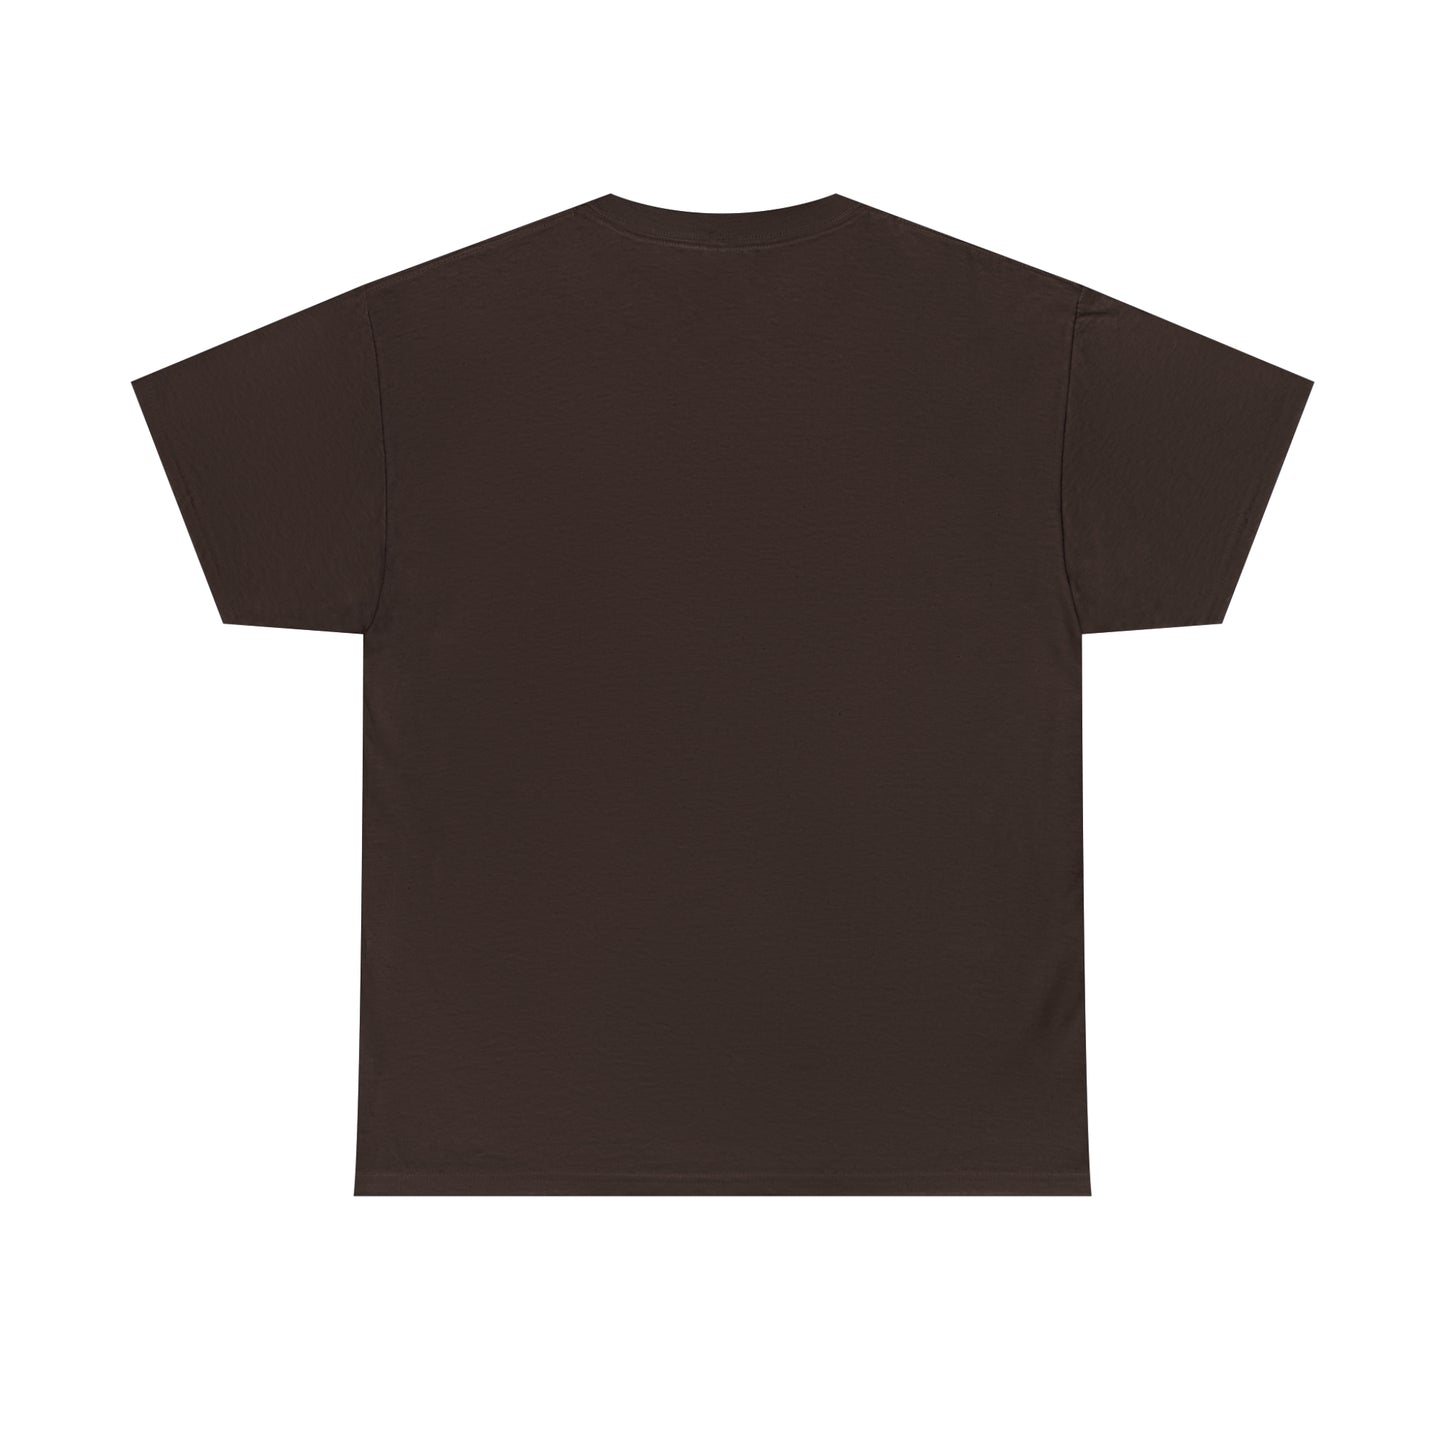 YAP Unisex T-shirt Dark Chocolate